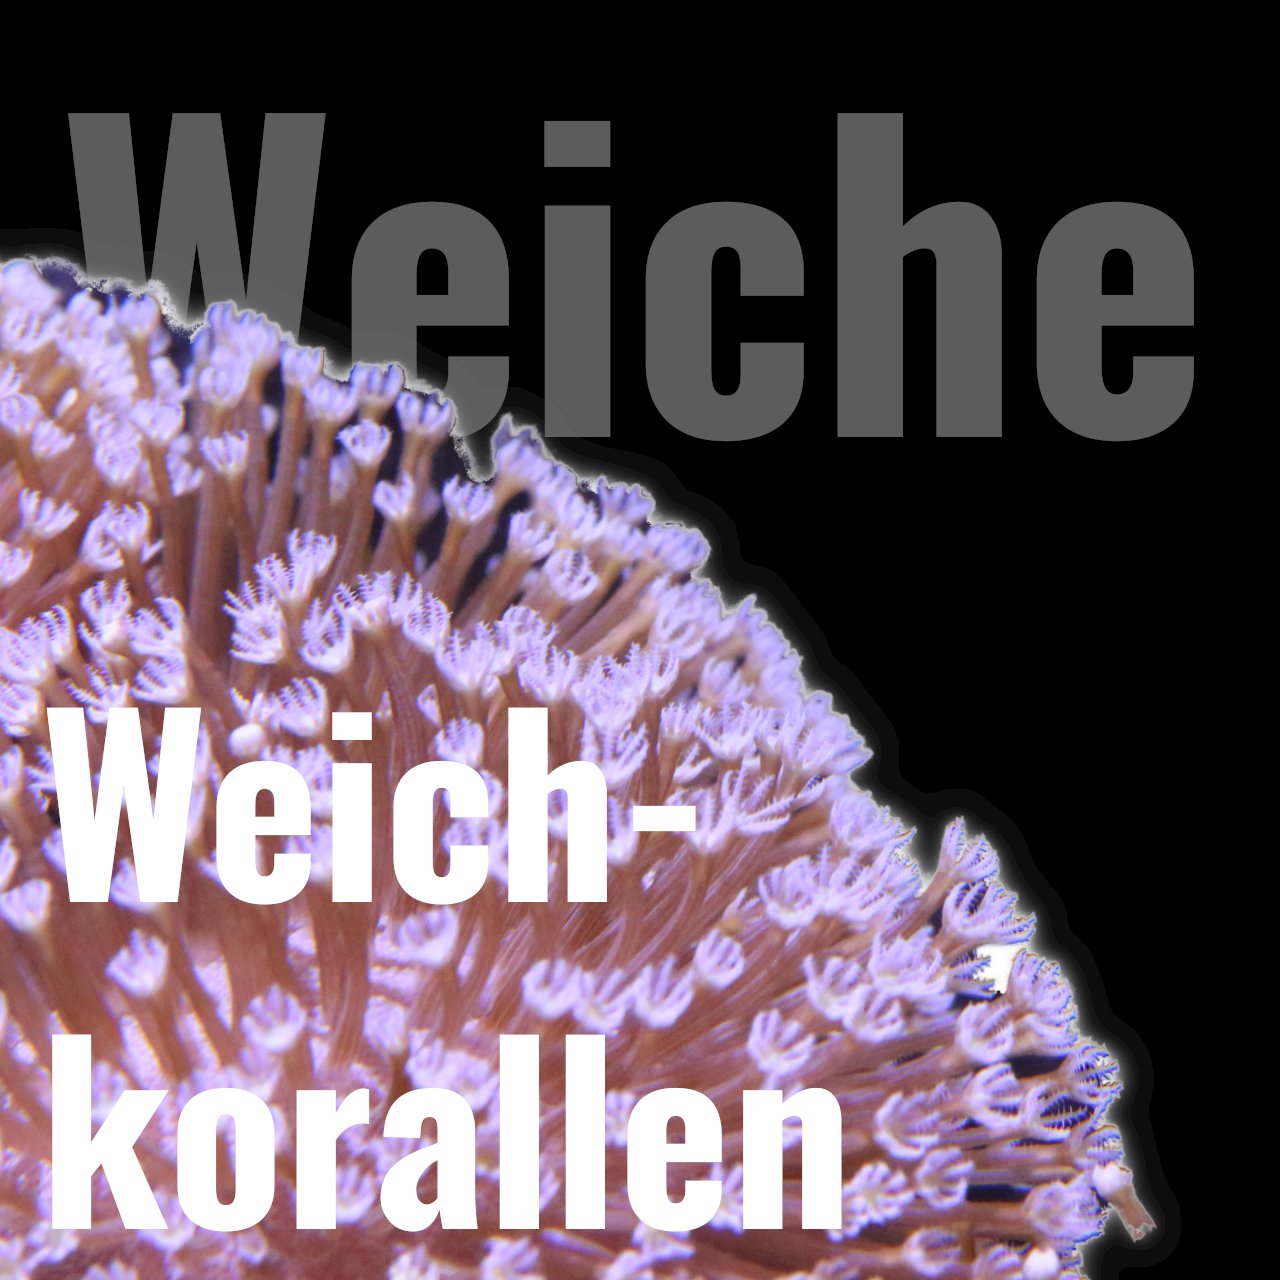 Weichkorallen - Corals4U